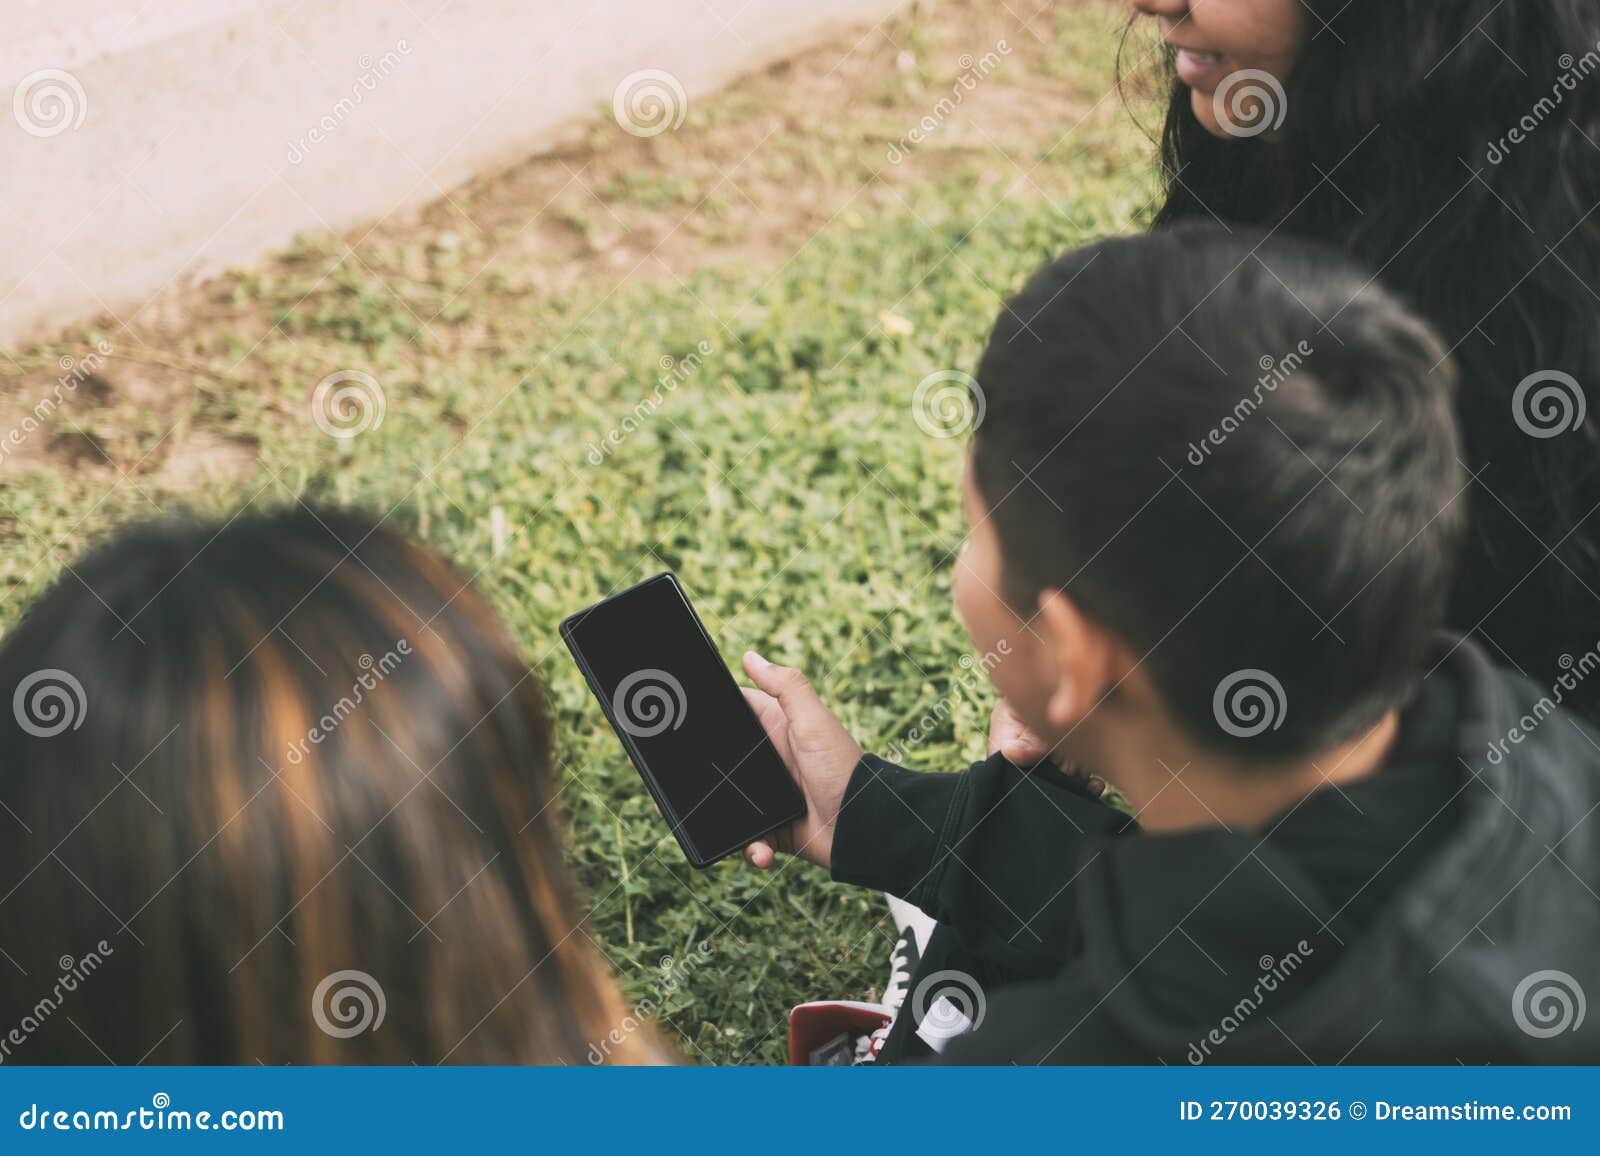 vista desde atras grupo de latinos riendo sentados en el suelo en un parque con un smartphone